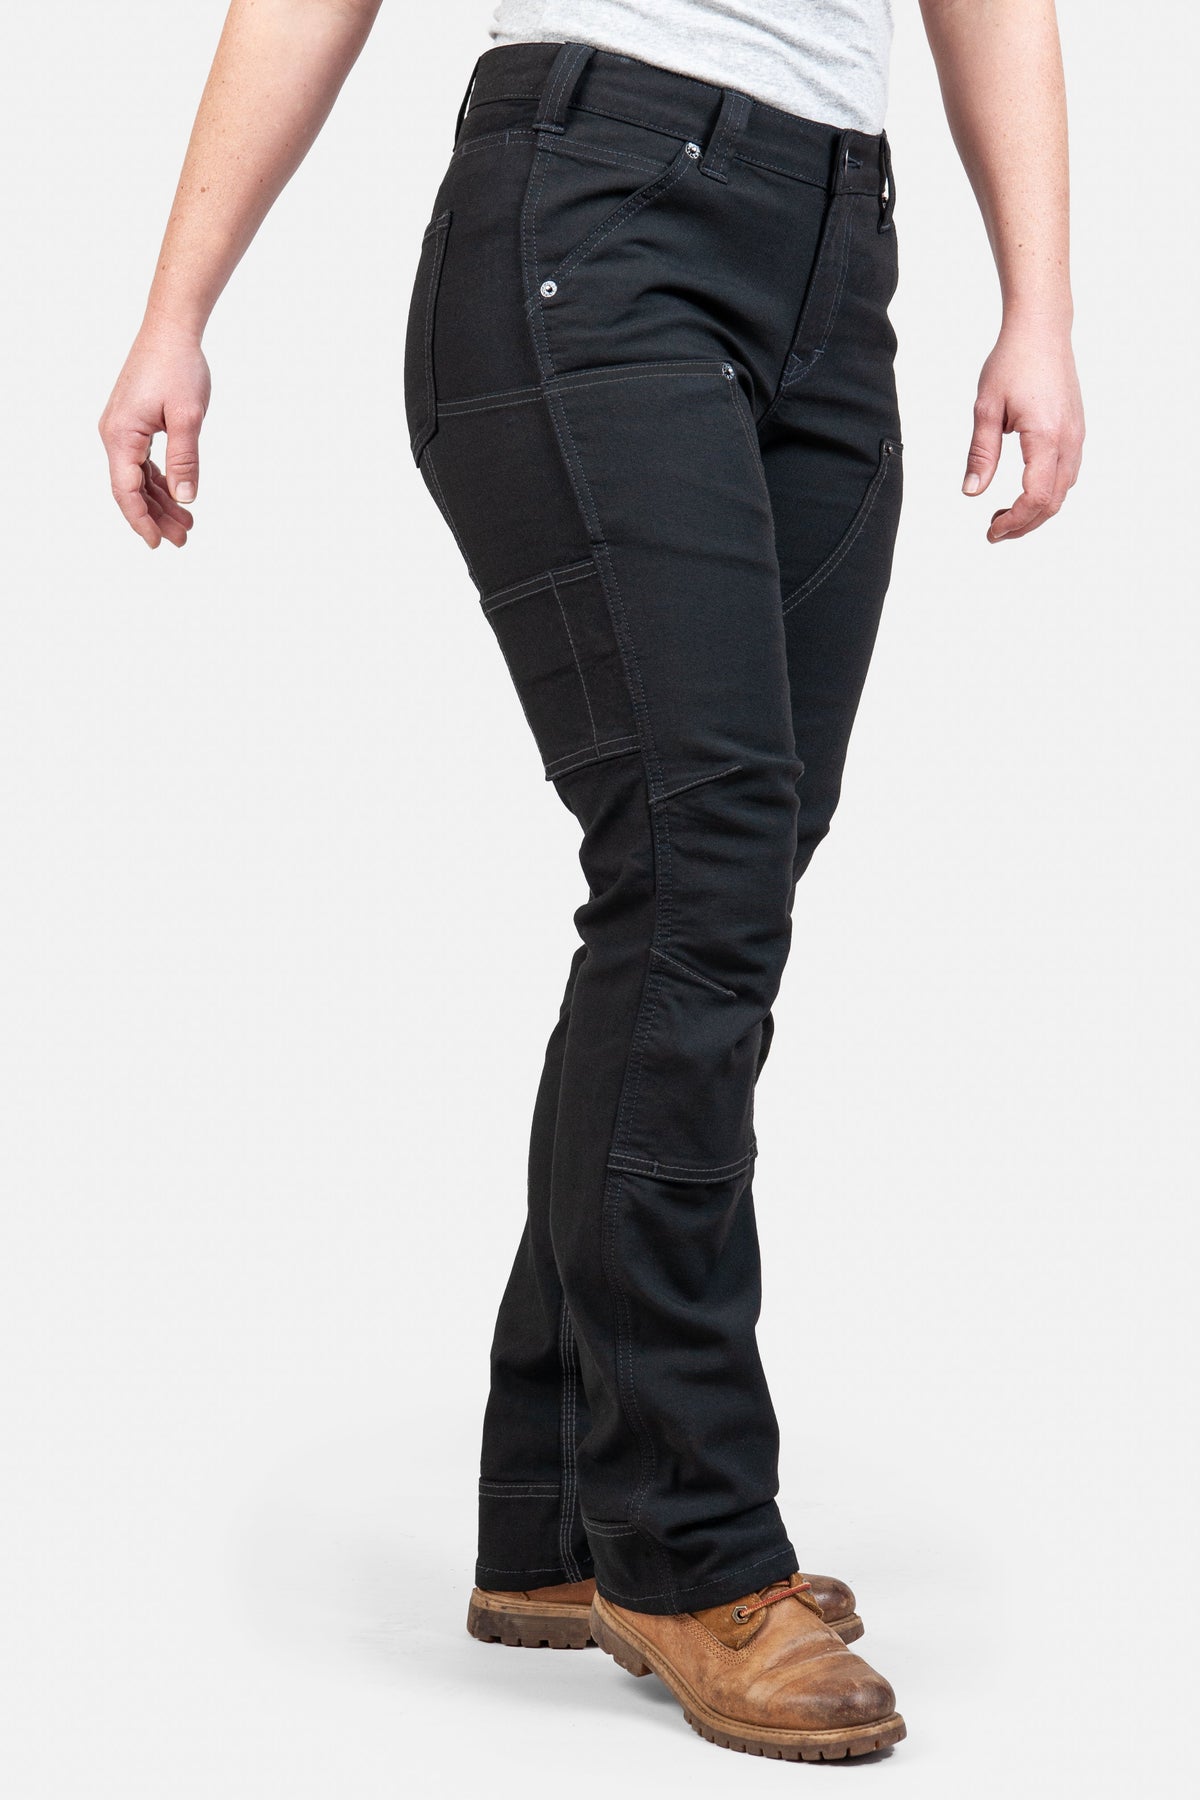 Dovetail Workwear Women&#39;s Britt Canvas Utility Pant - Work World - Workwear, Work Boots, Safety Gear